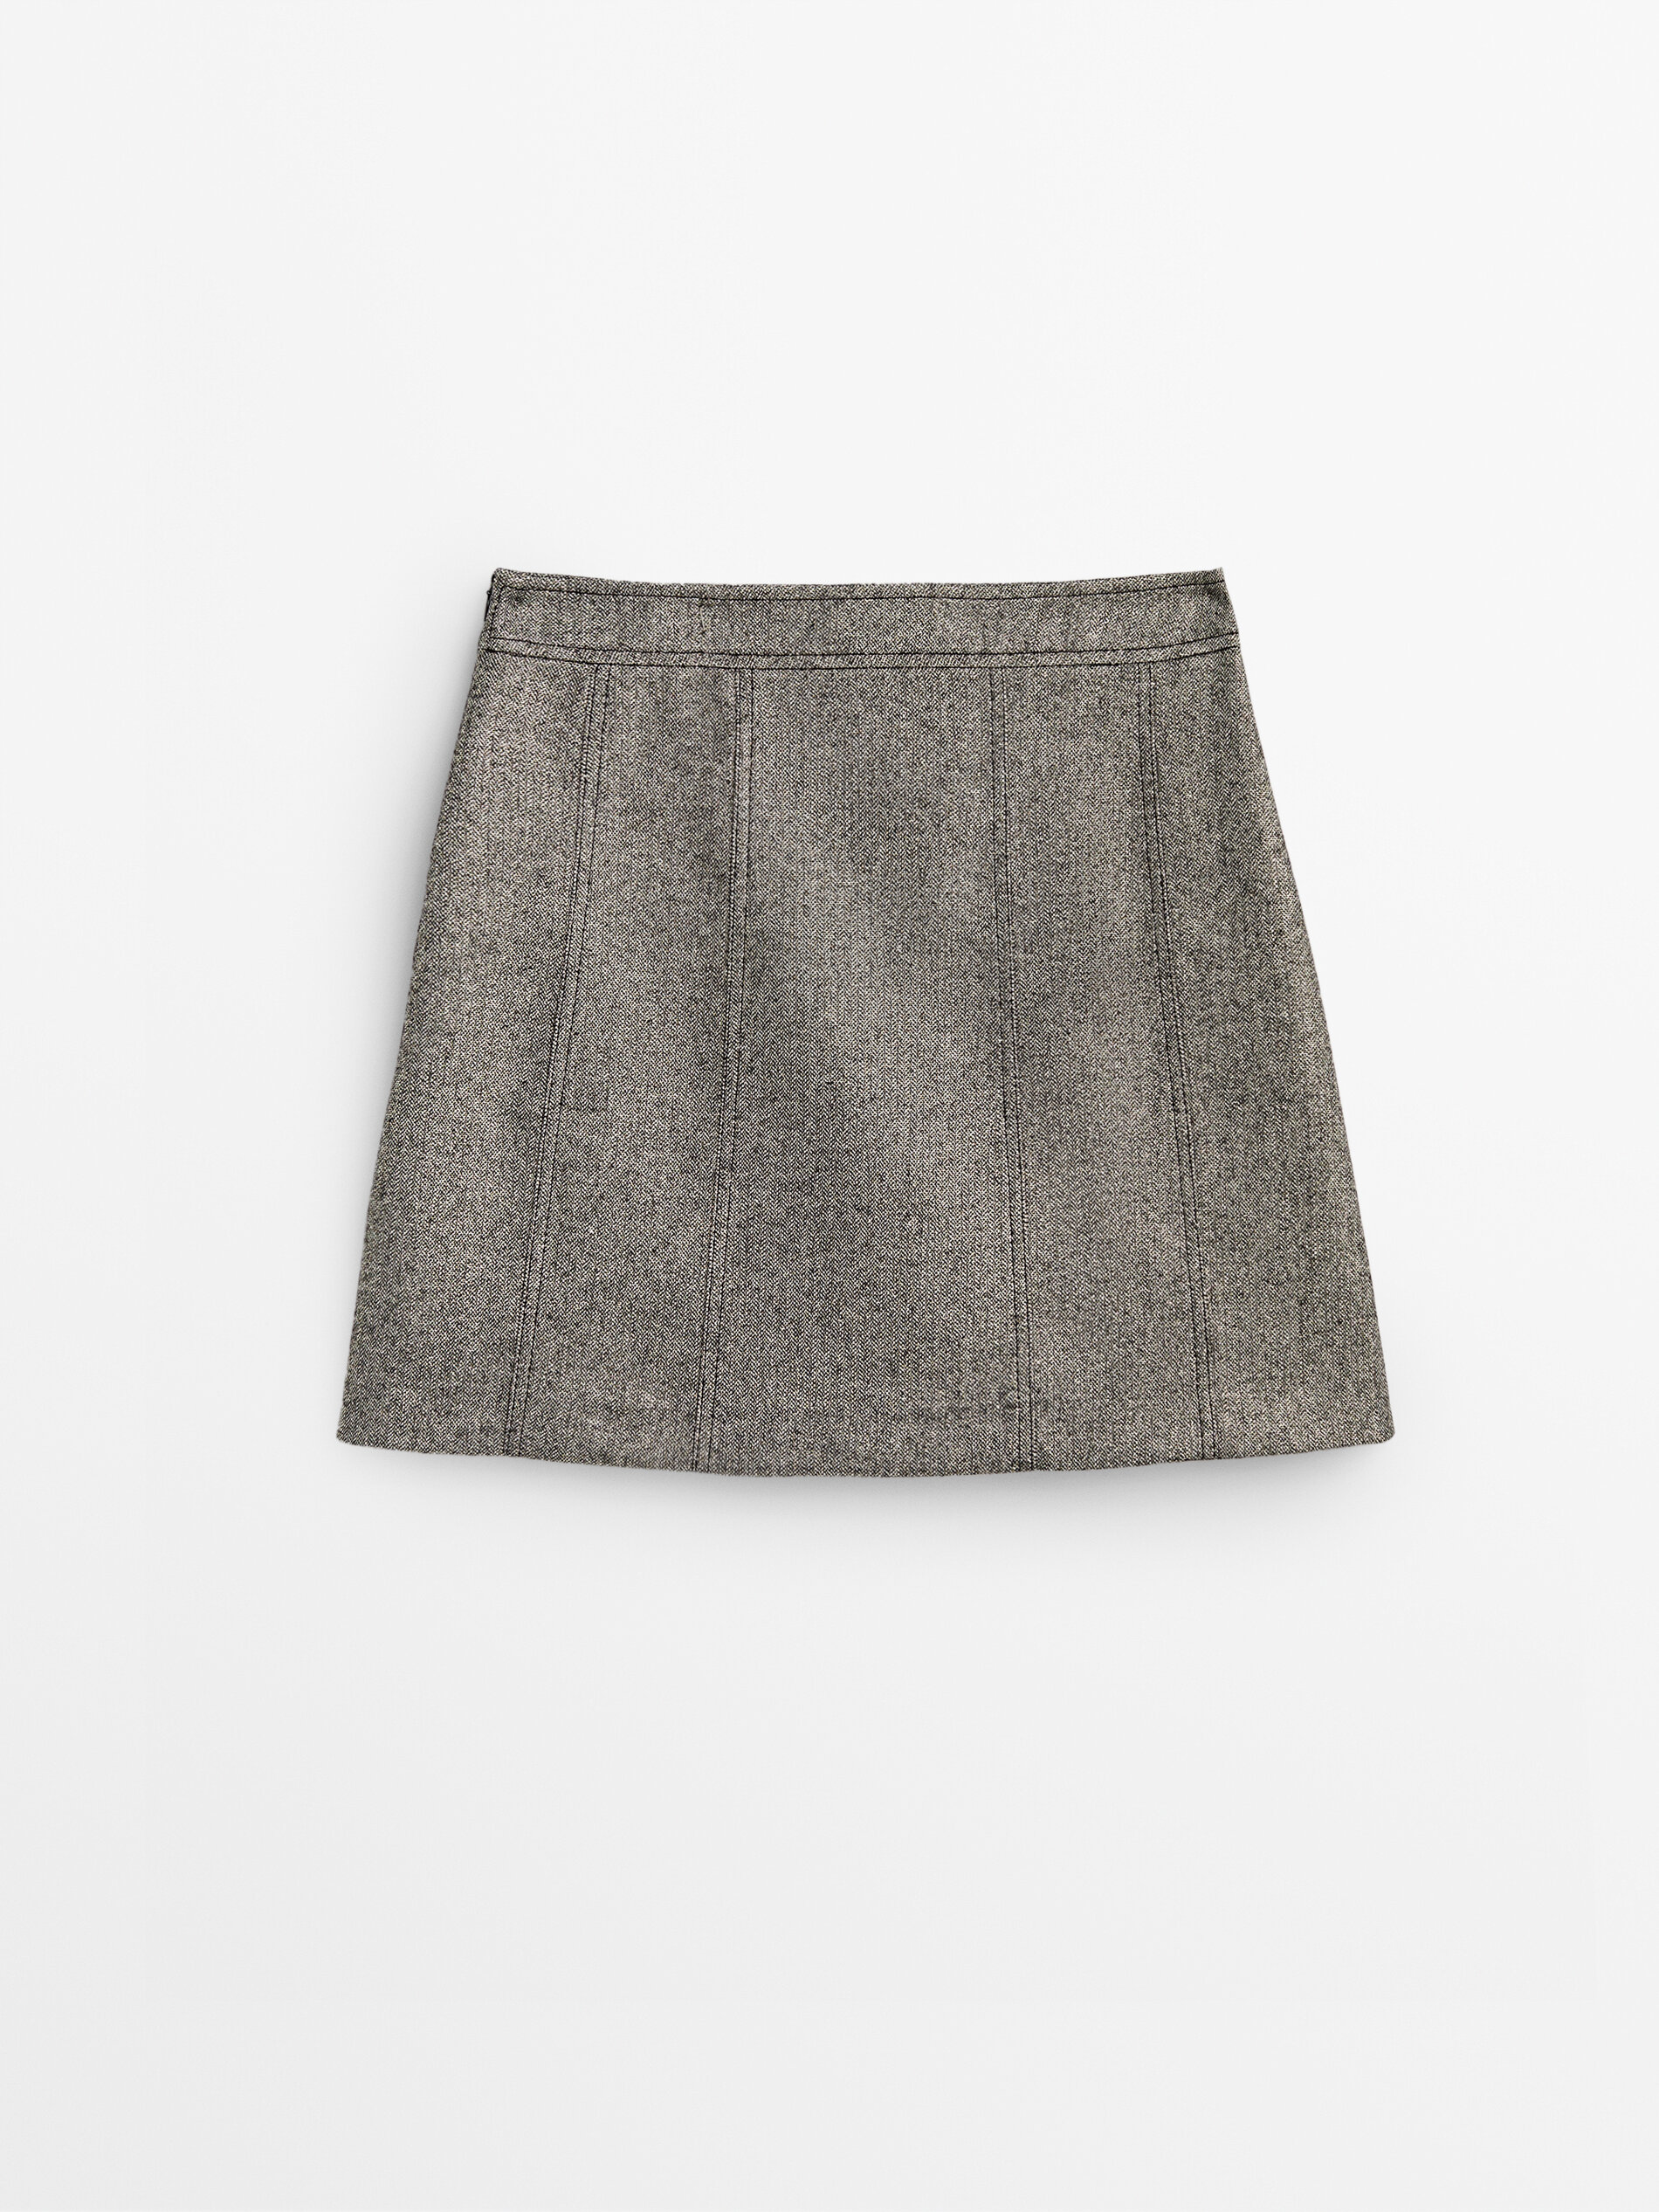 Massimo Dutti Metallic Thread Box Pleat Mini Skirt - Big Apple Buddy